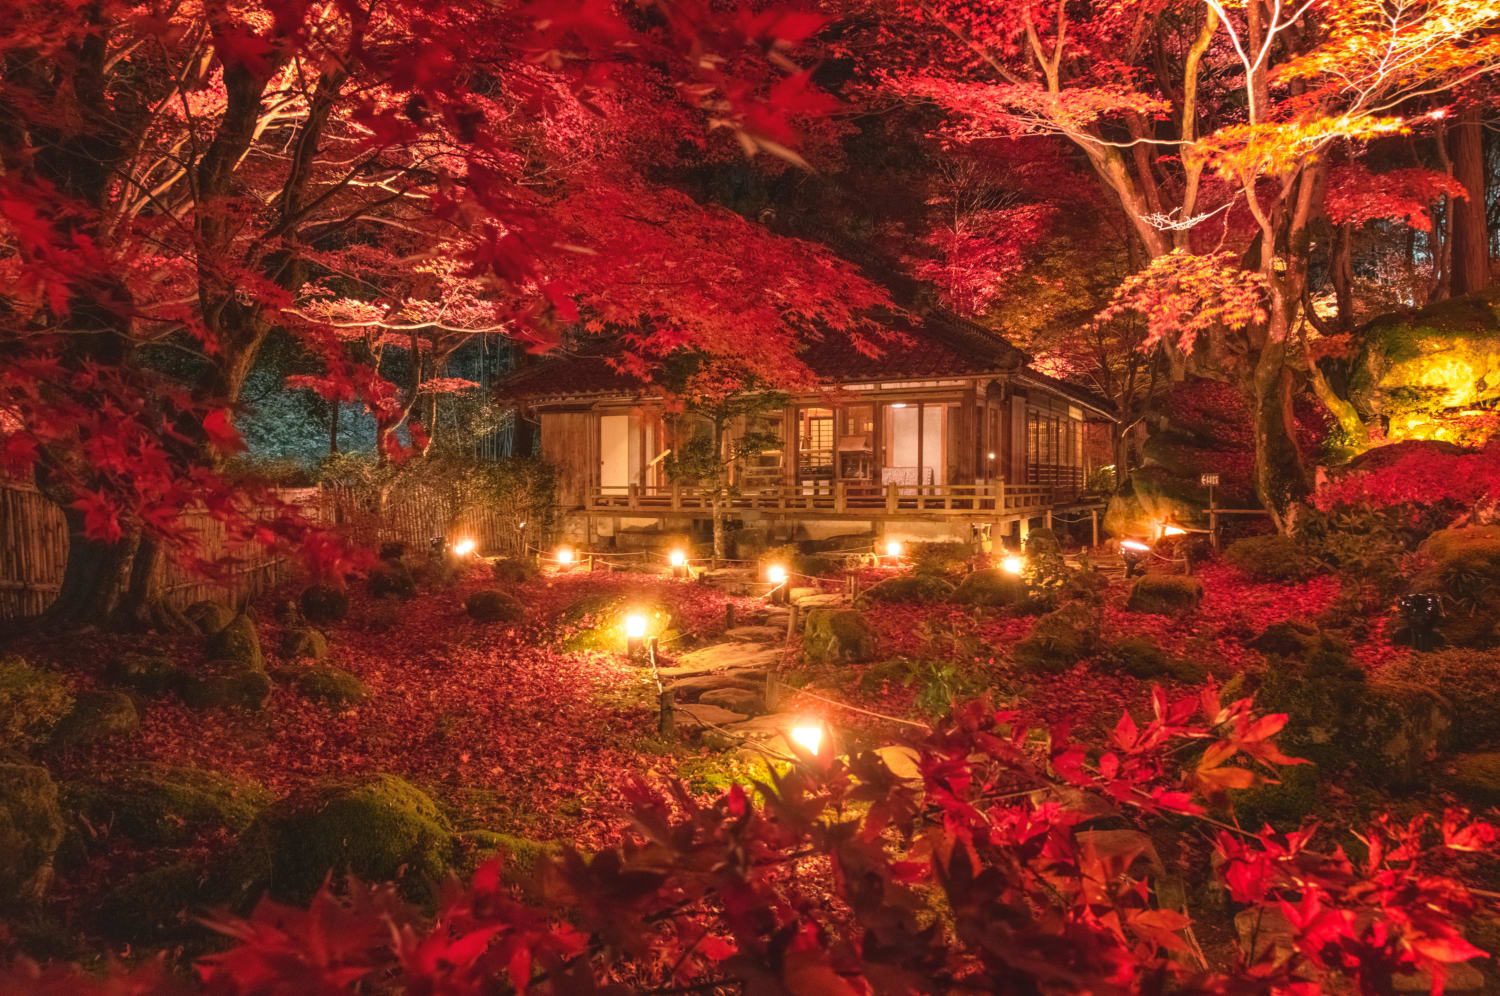 Peak autumn at this temple in Japan